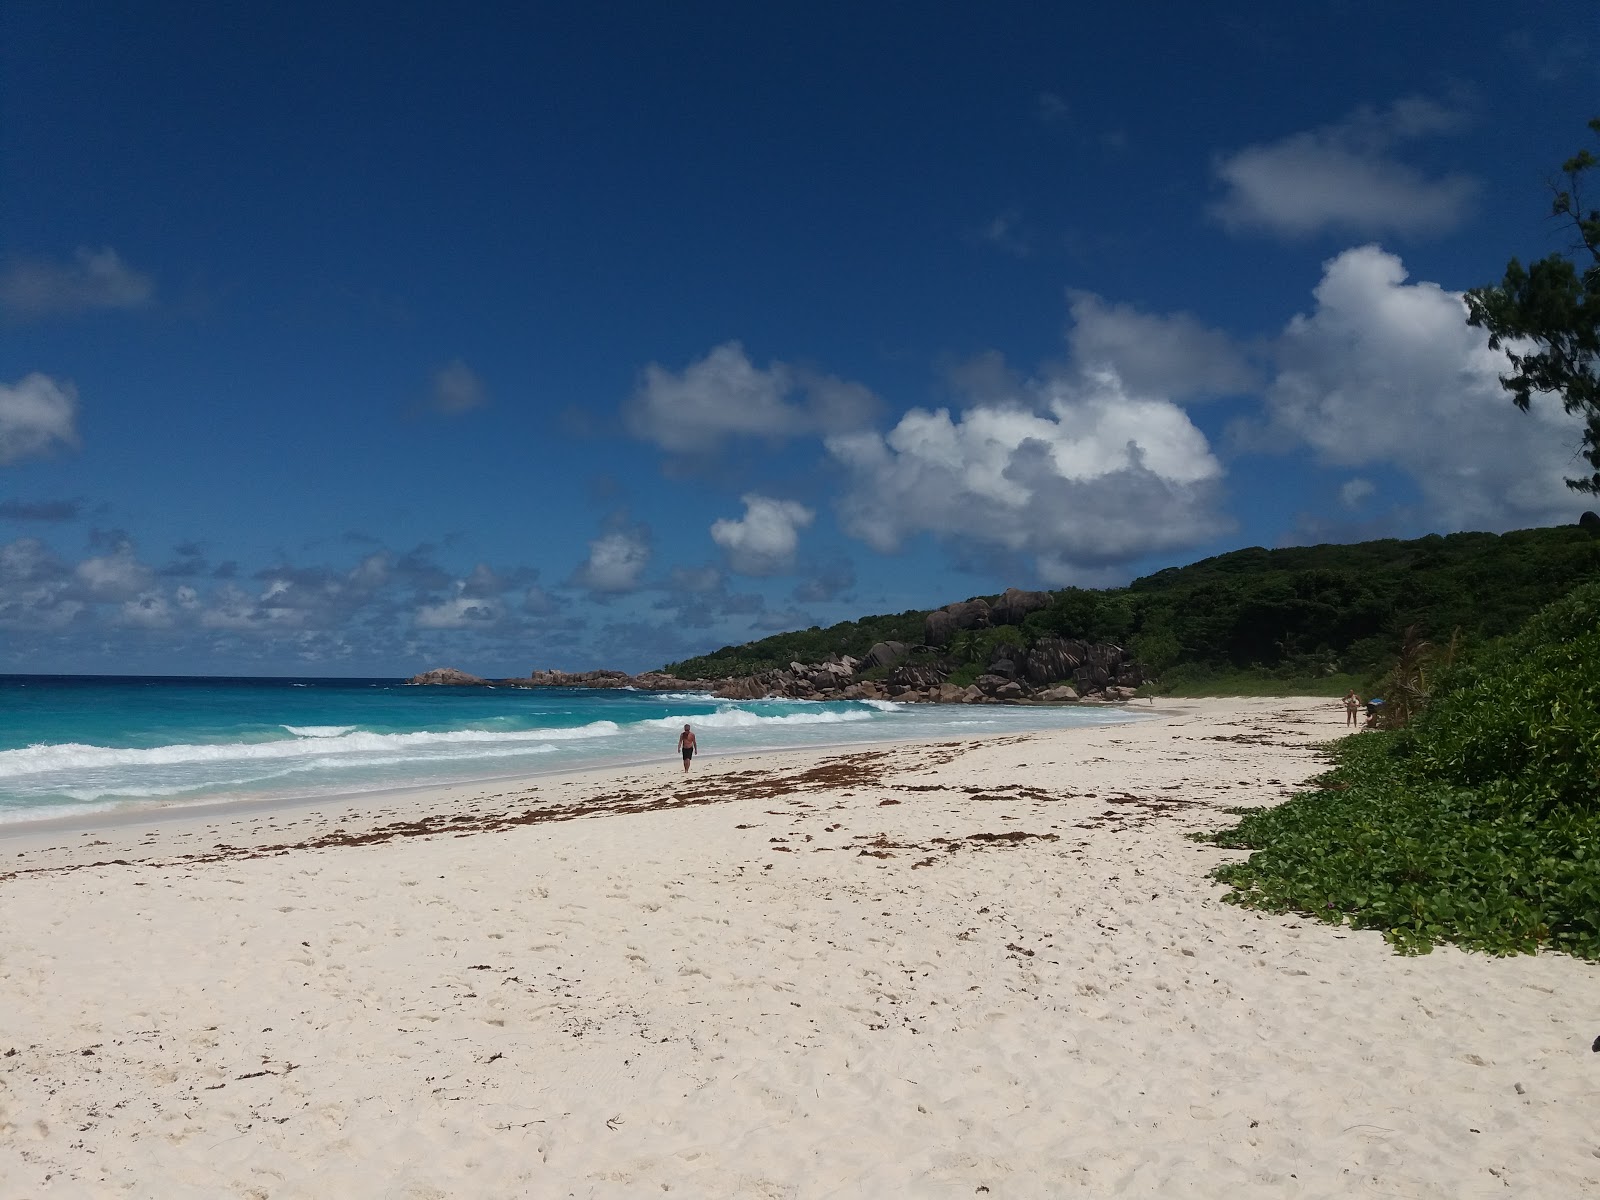 Foto di Spiaggia Petite Anse ubicato in zona naturale